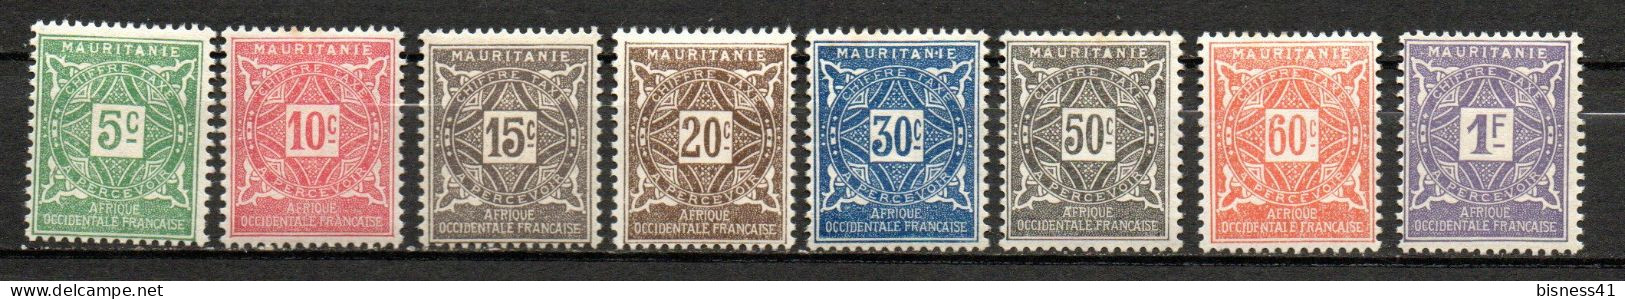 Col33  Colonie Mauritanie Taxe N° 17 à 24 Neuf X MH  Cote : 9,25€ - Gebraucht